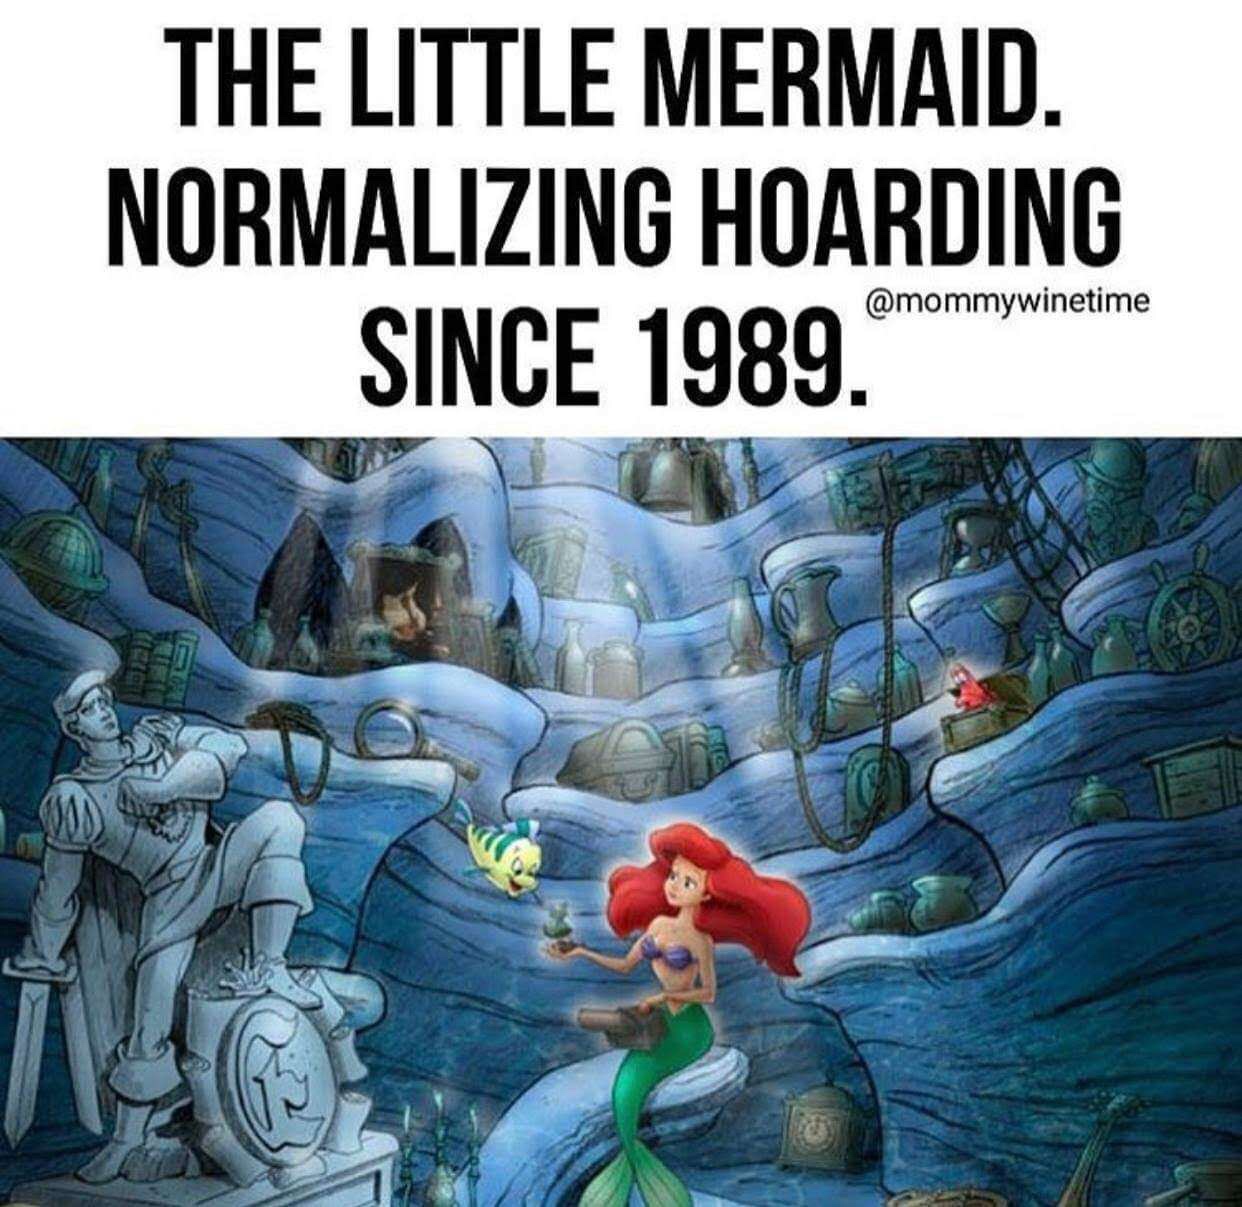 ariel little mermaid treasure - The Little Mermaid. Normalizing Hoarding Since 1989.